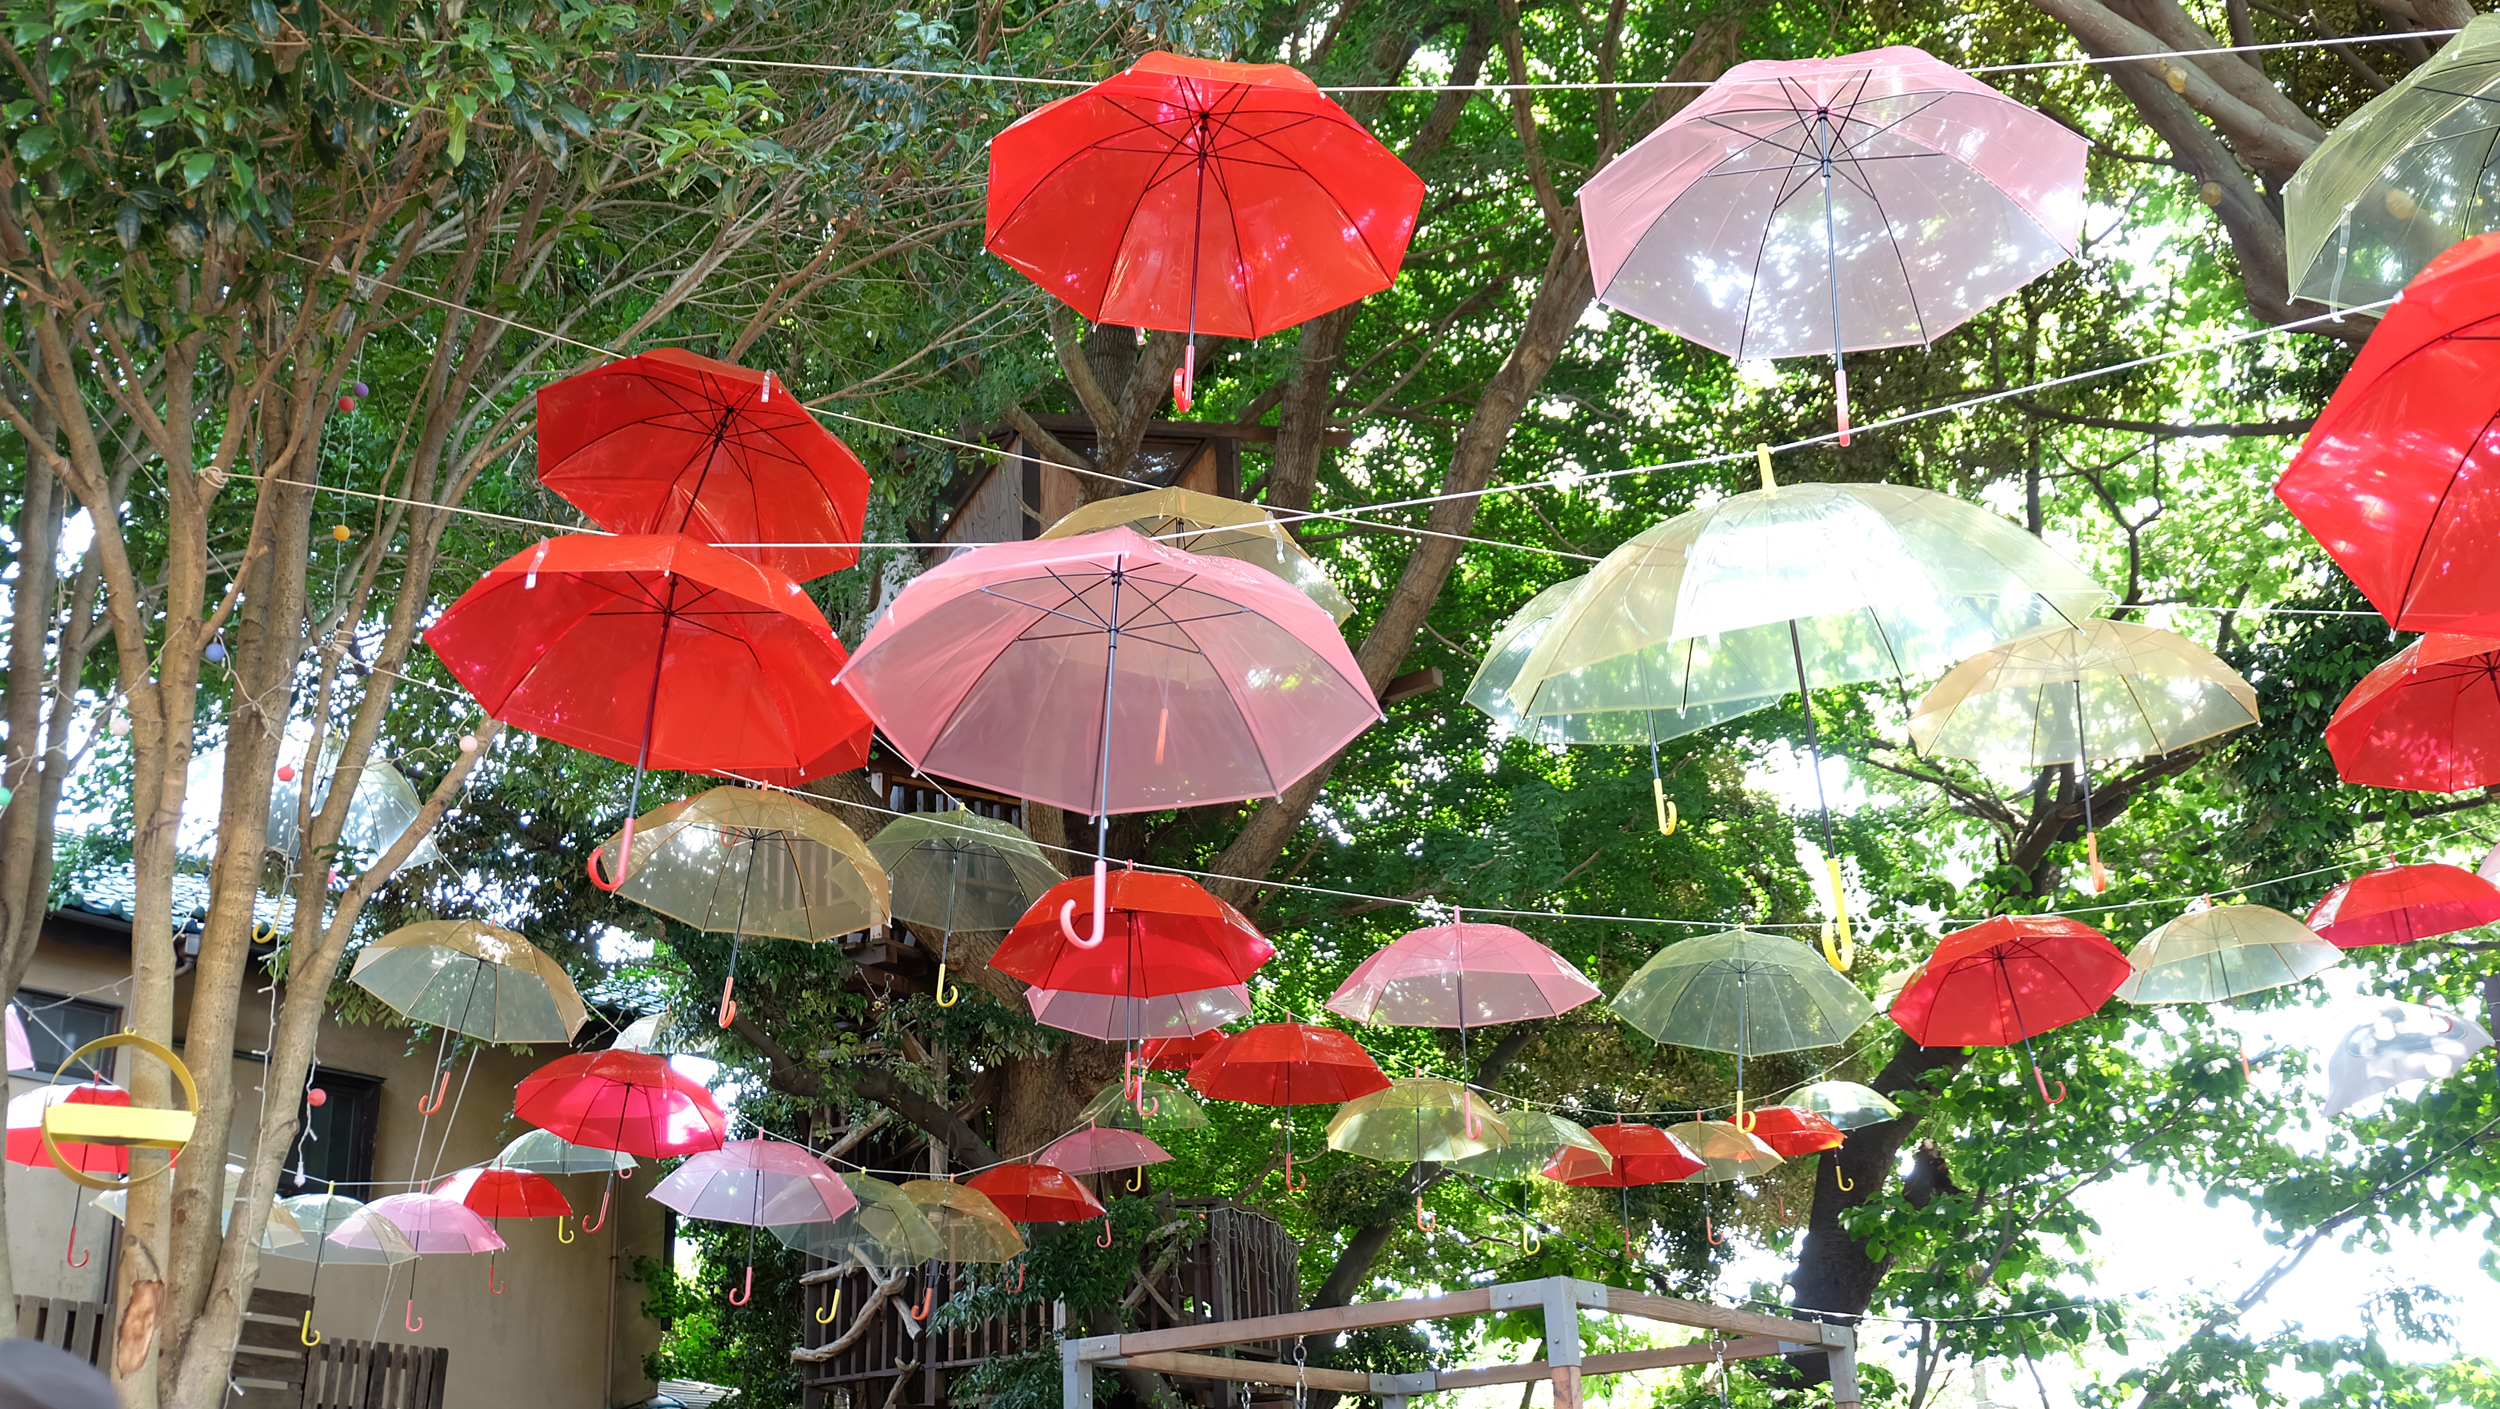 千葉市初 ツリーハウスの森カフェ 椿森コムナ が梅雨でもワクワク 0本の傘で彩る傘の森に 株式会社拓匠開発のプレスリリース